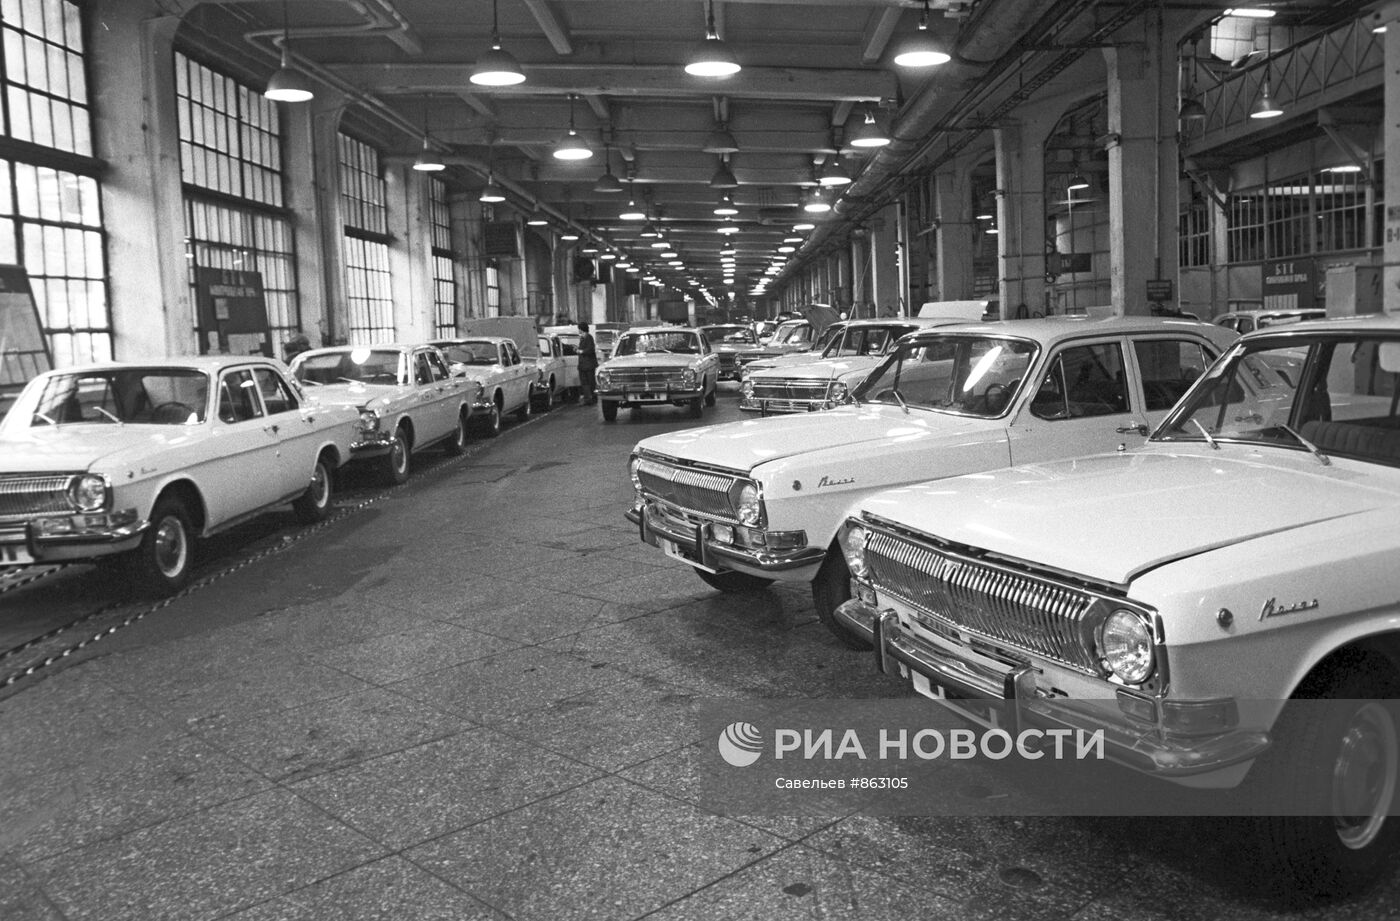 Автомобили марки "ГАЗ-24" (Волга) в цехе готовой продукции